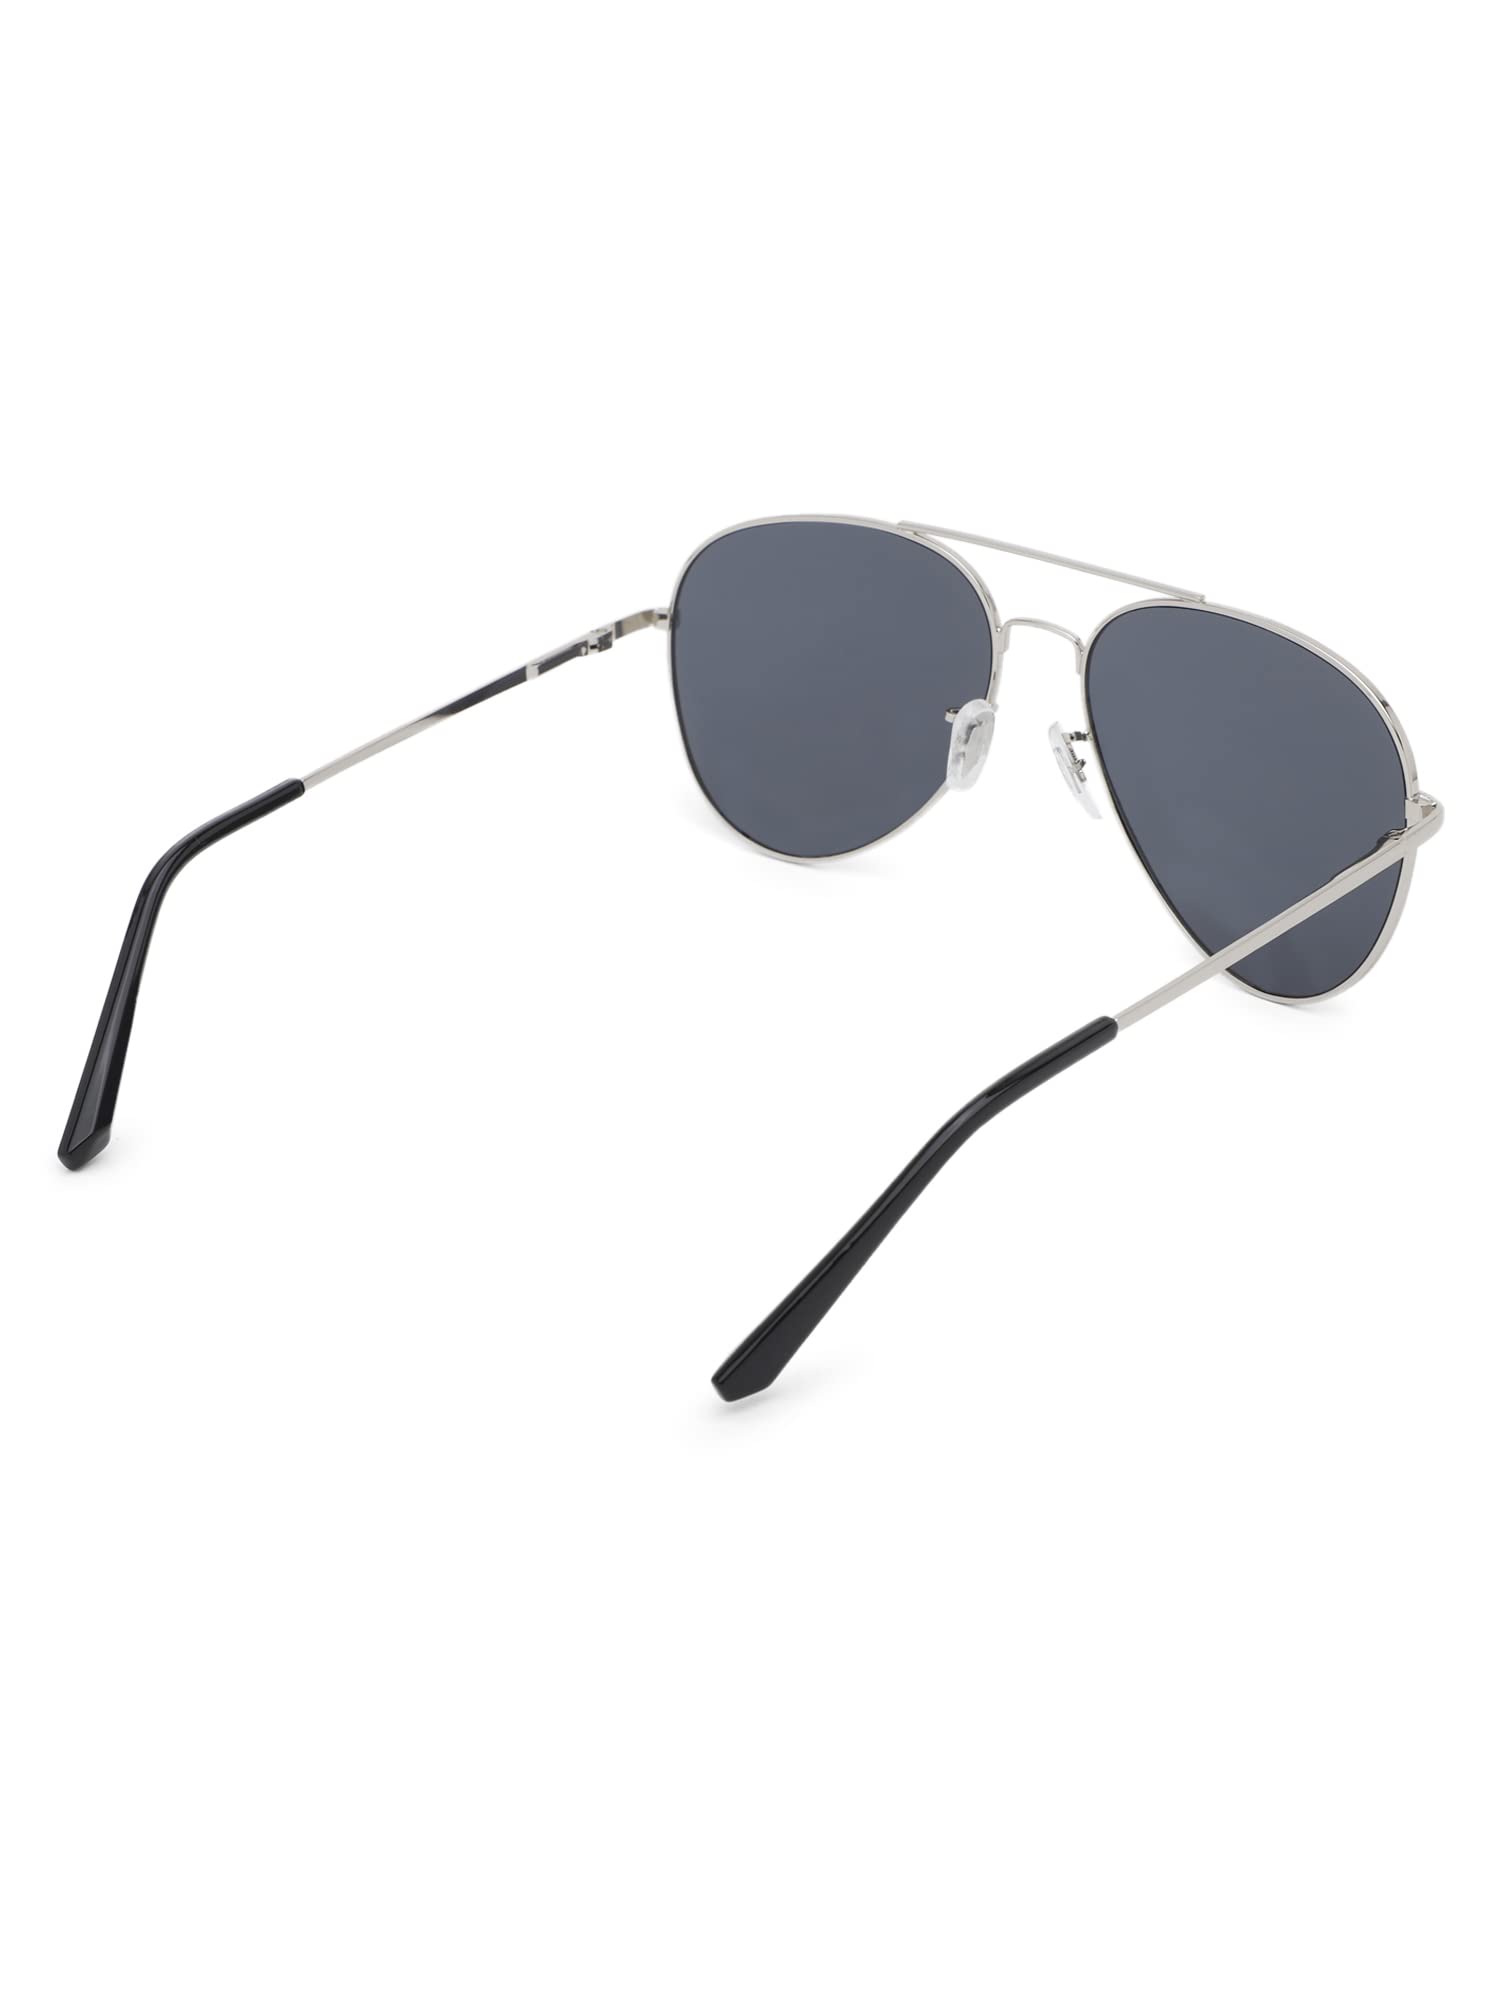 Intellilens Aviator UV Protected Sunglasses For Men & Women